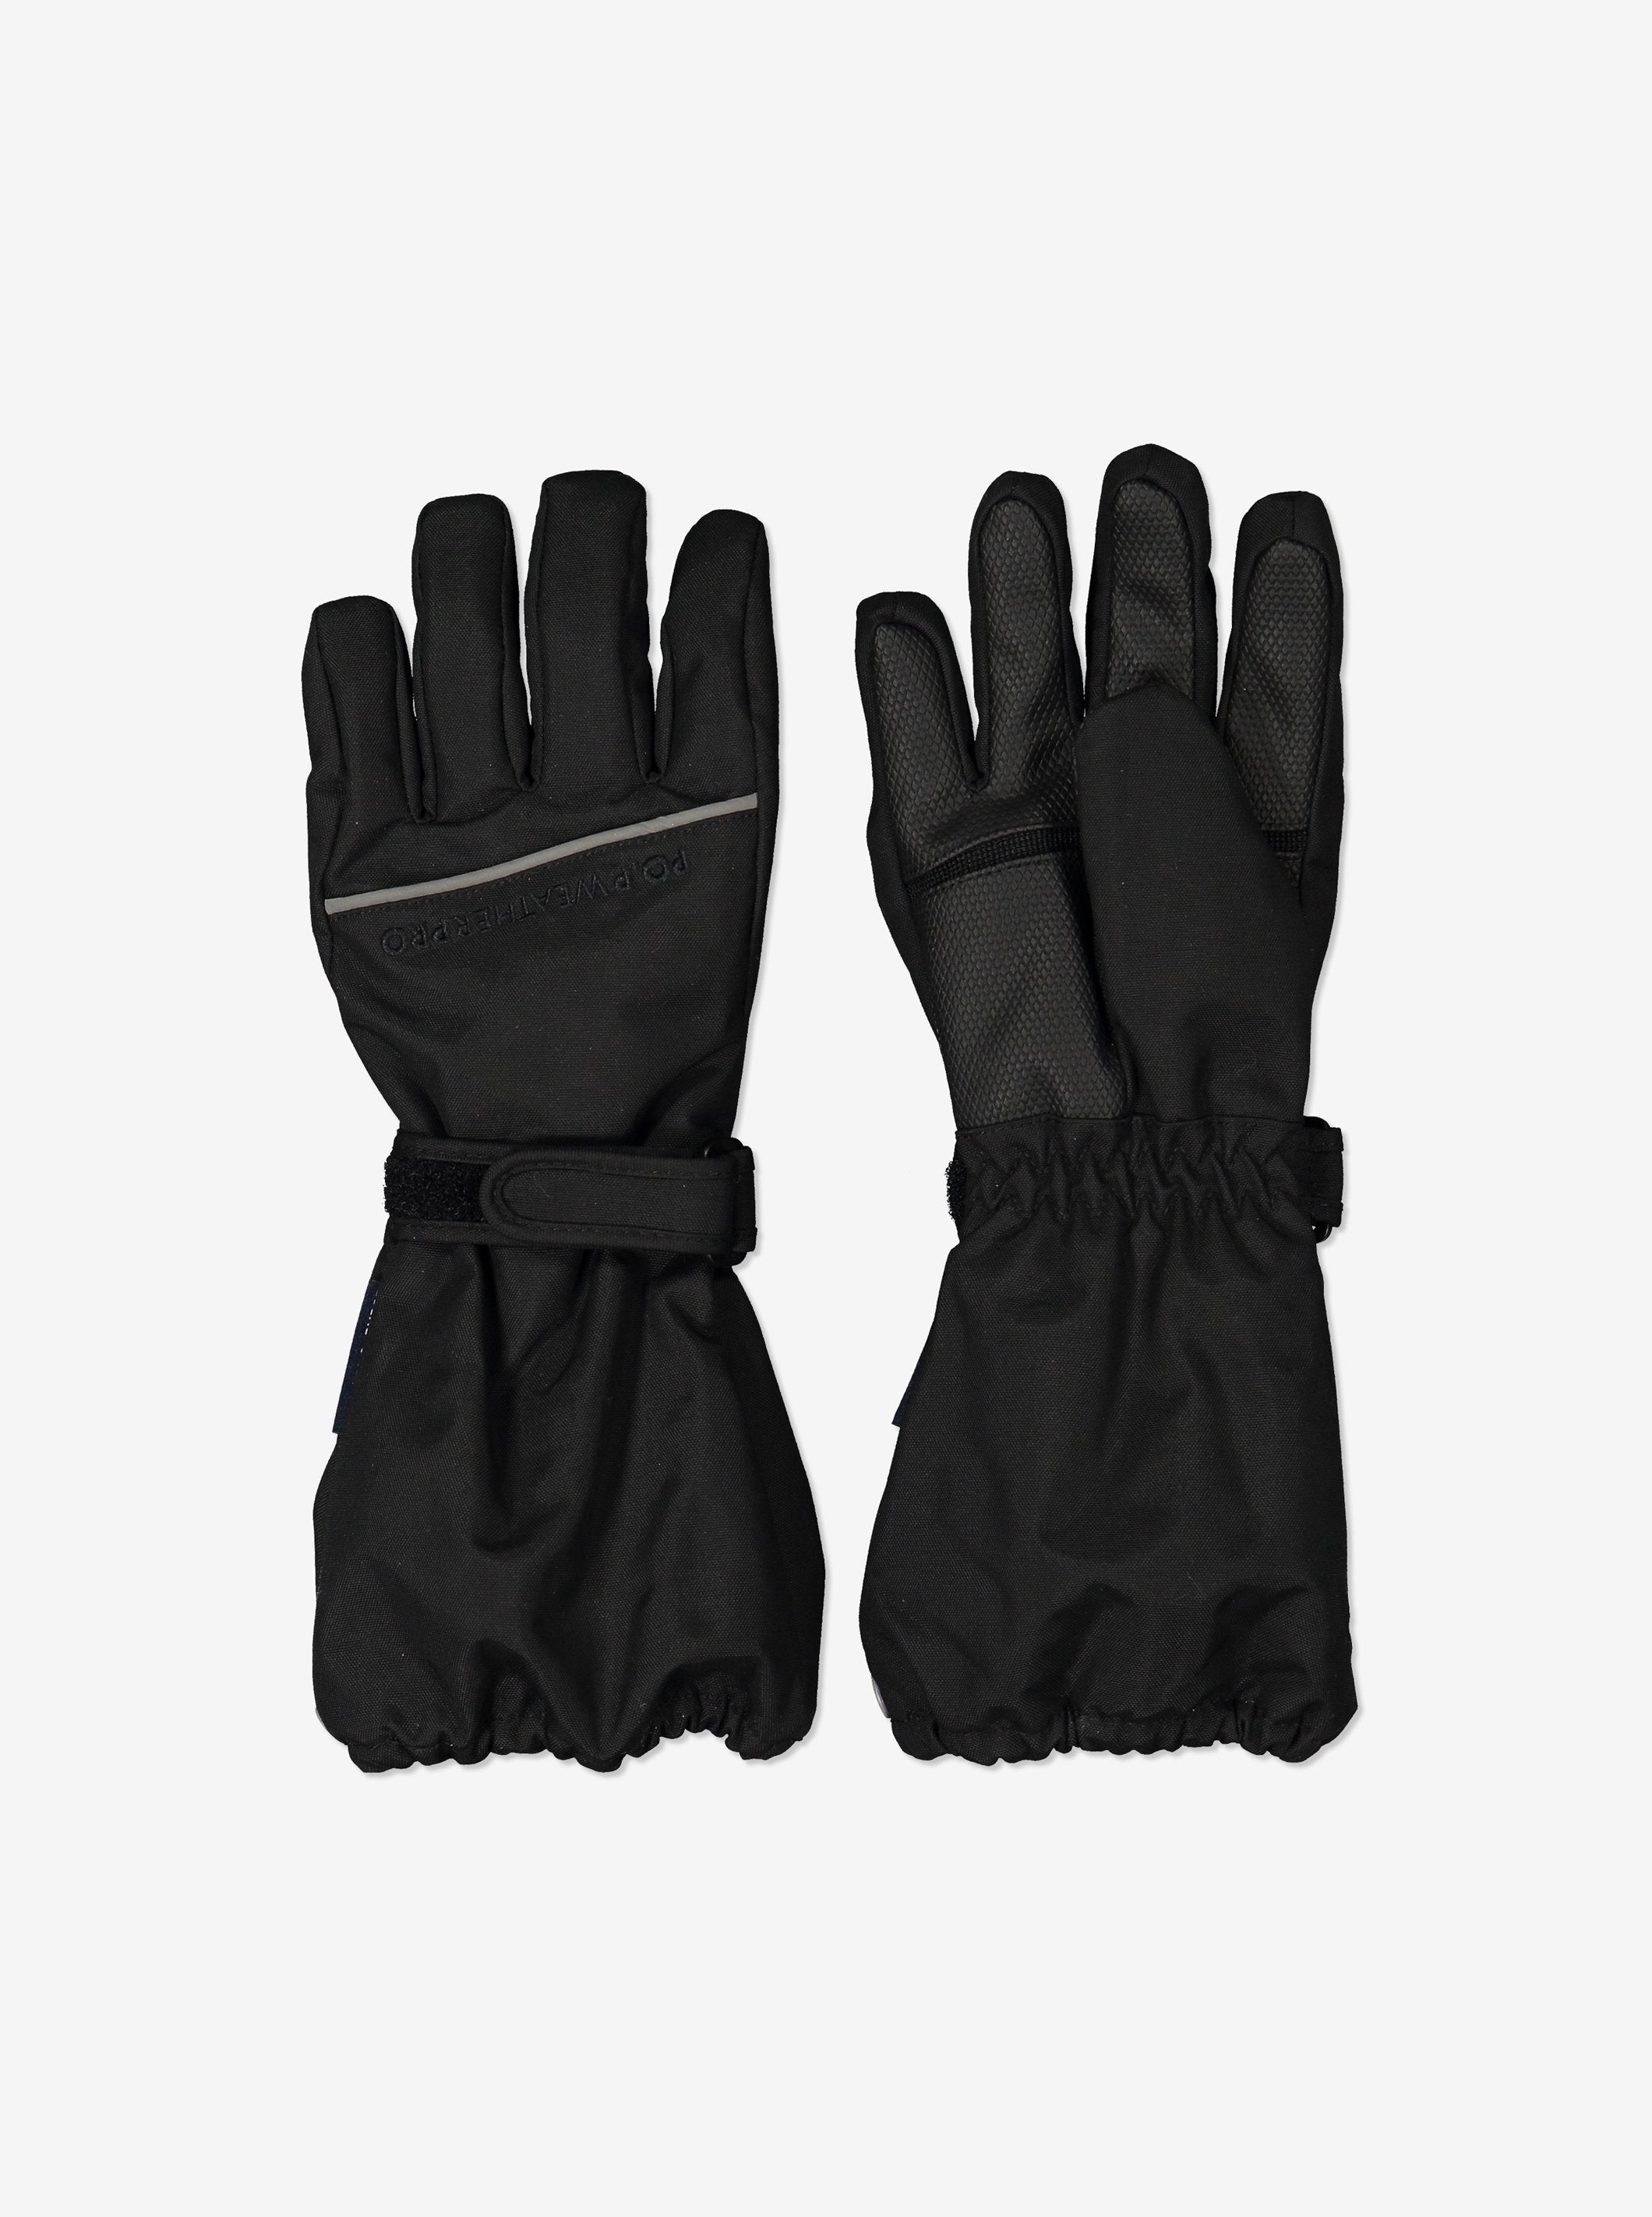 Long Padded Kids Winter Gloves